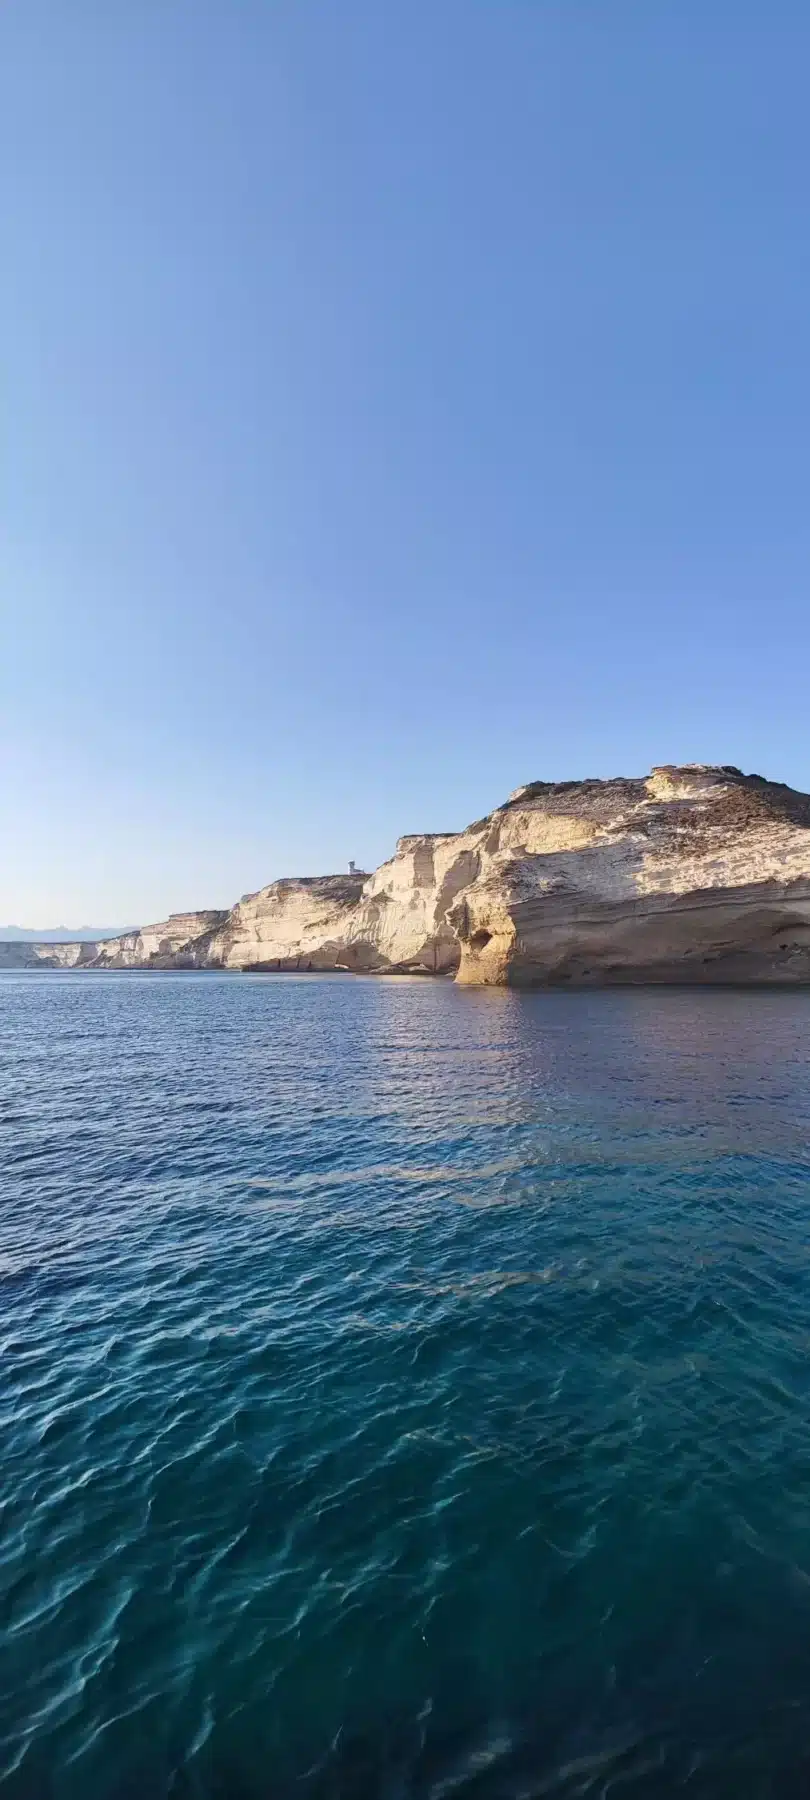 Eine ruhige Meereslandschaft mit klarem, blauem Wasser unter einem strahlenden Himmel und schroffen, geschichteten Sandsteinklippen am Meer während eines Segeltörns.